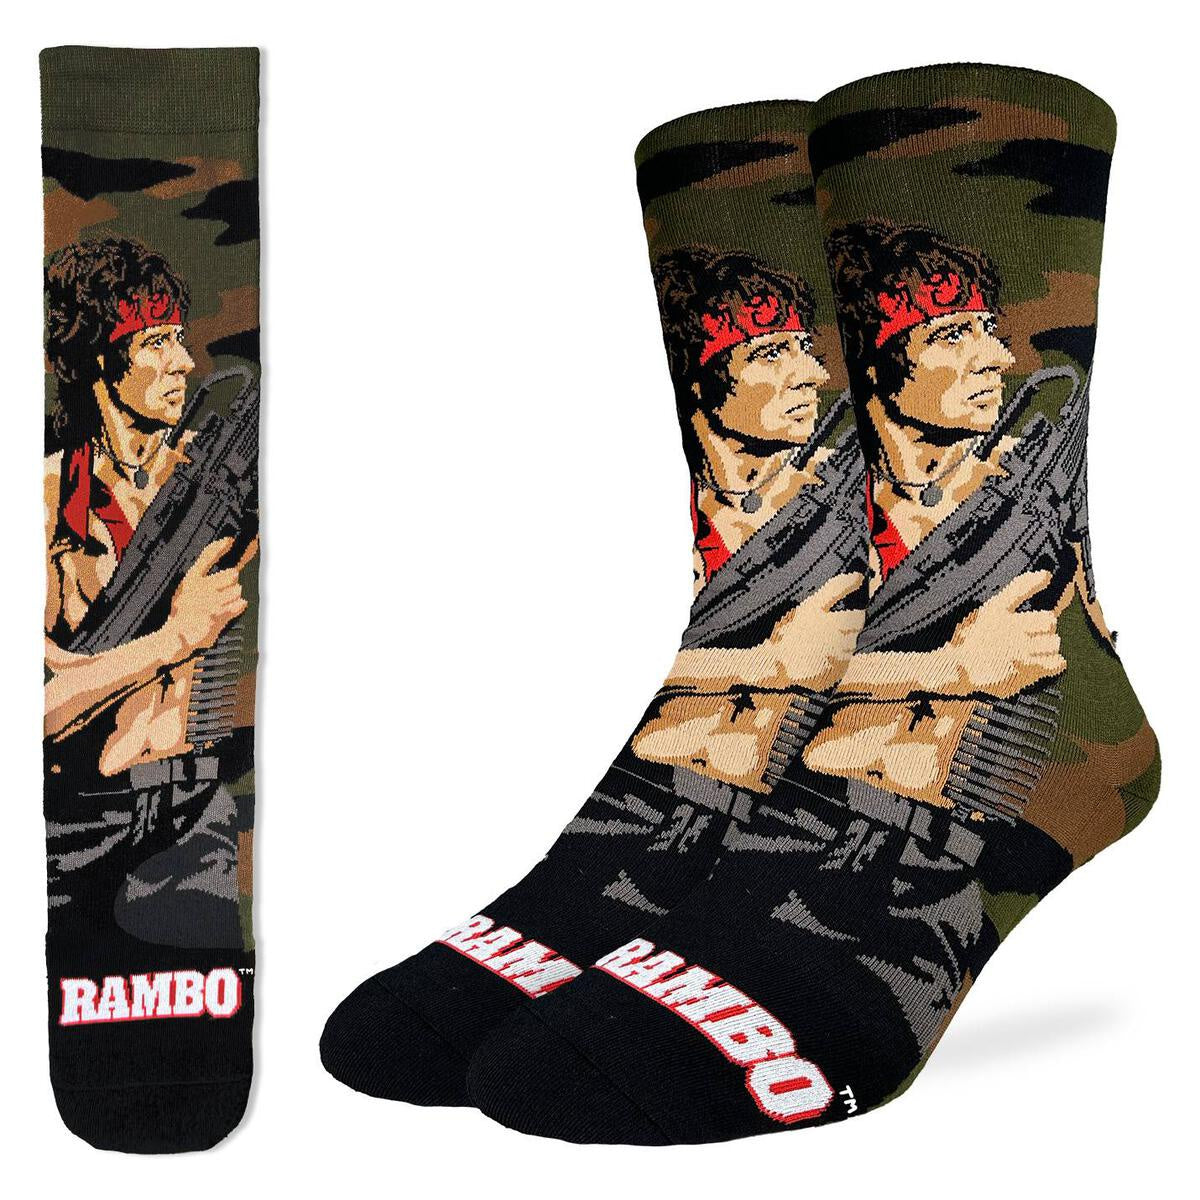 Rambo with M60 Machine Gun Socks (Size 8-13)